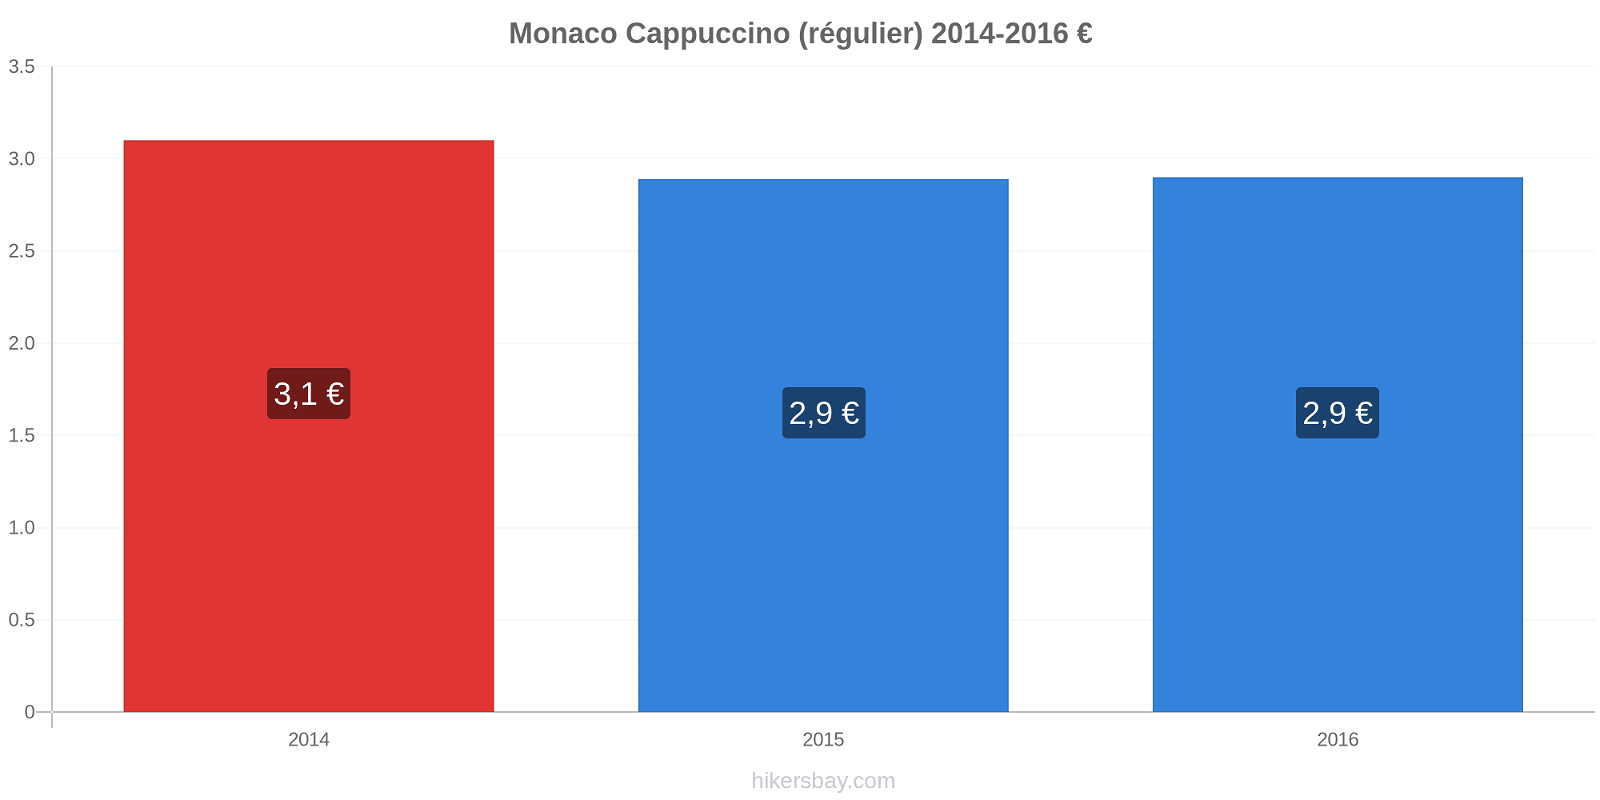 Monaco changements de prix Cappuccino (régulier) hikersbay.com